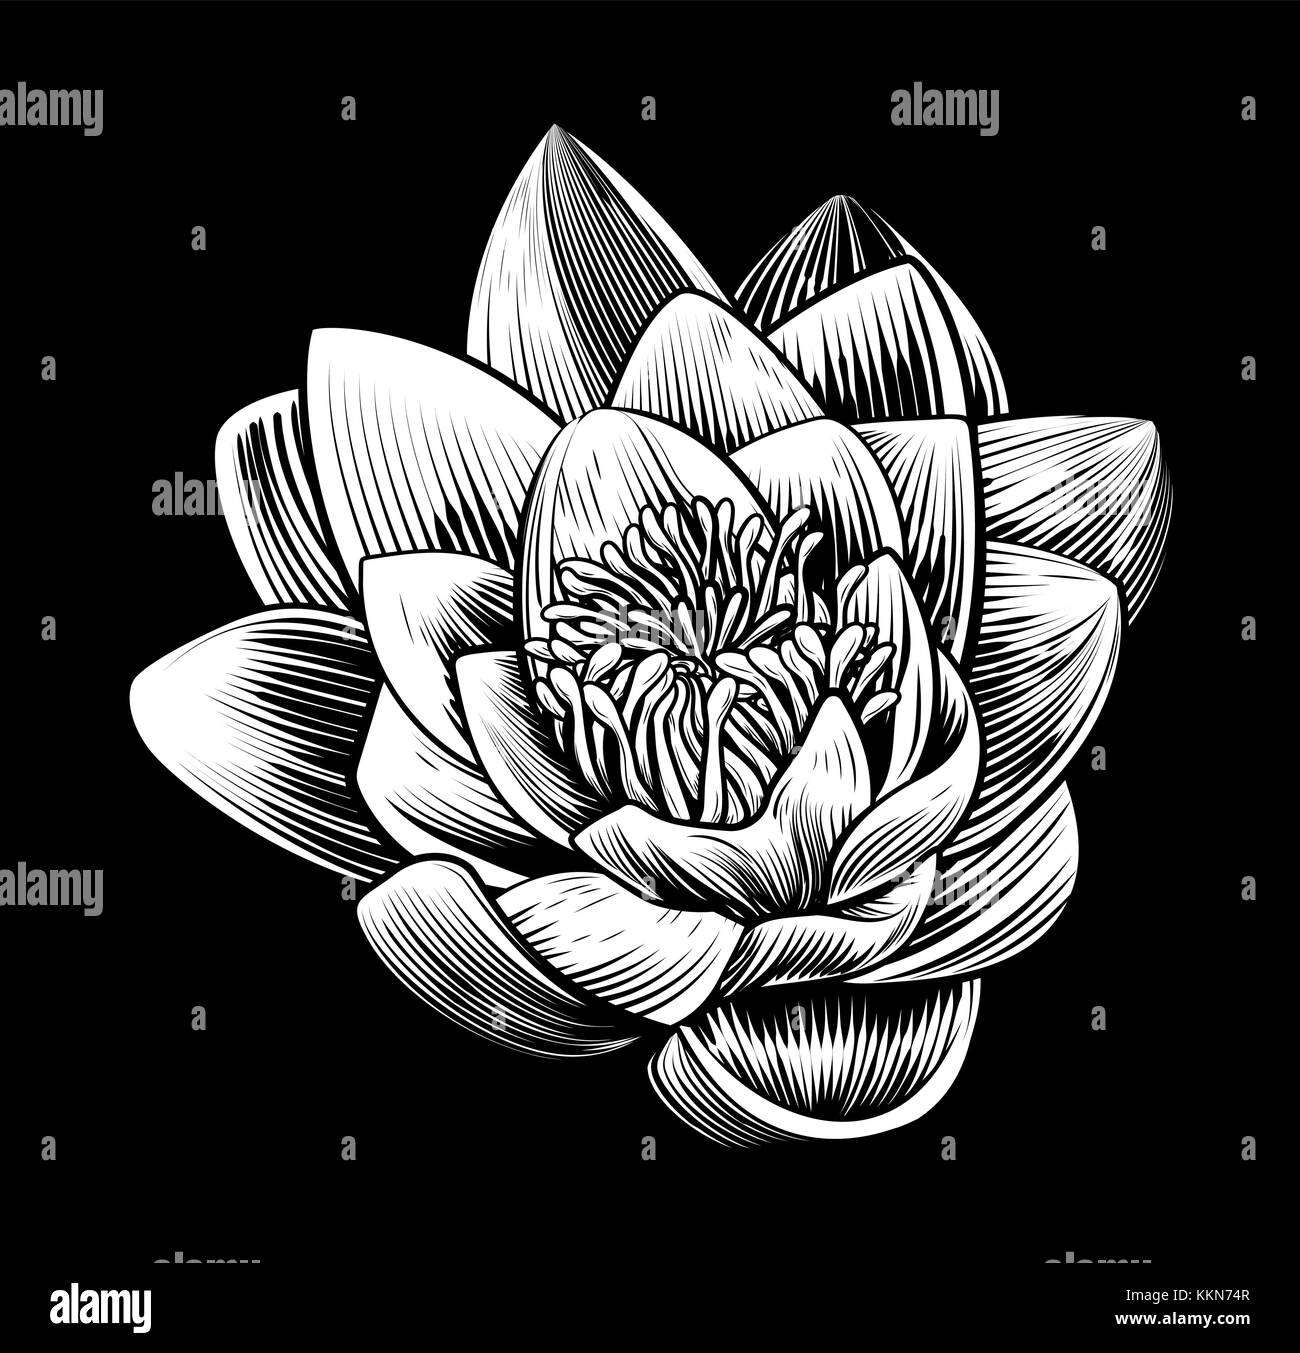 Water Lily fiore di loto vintage stile Woodcut Illustrazione Vettoriale